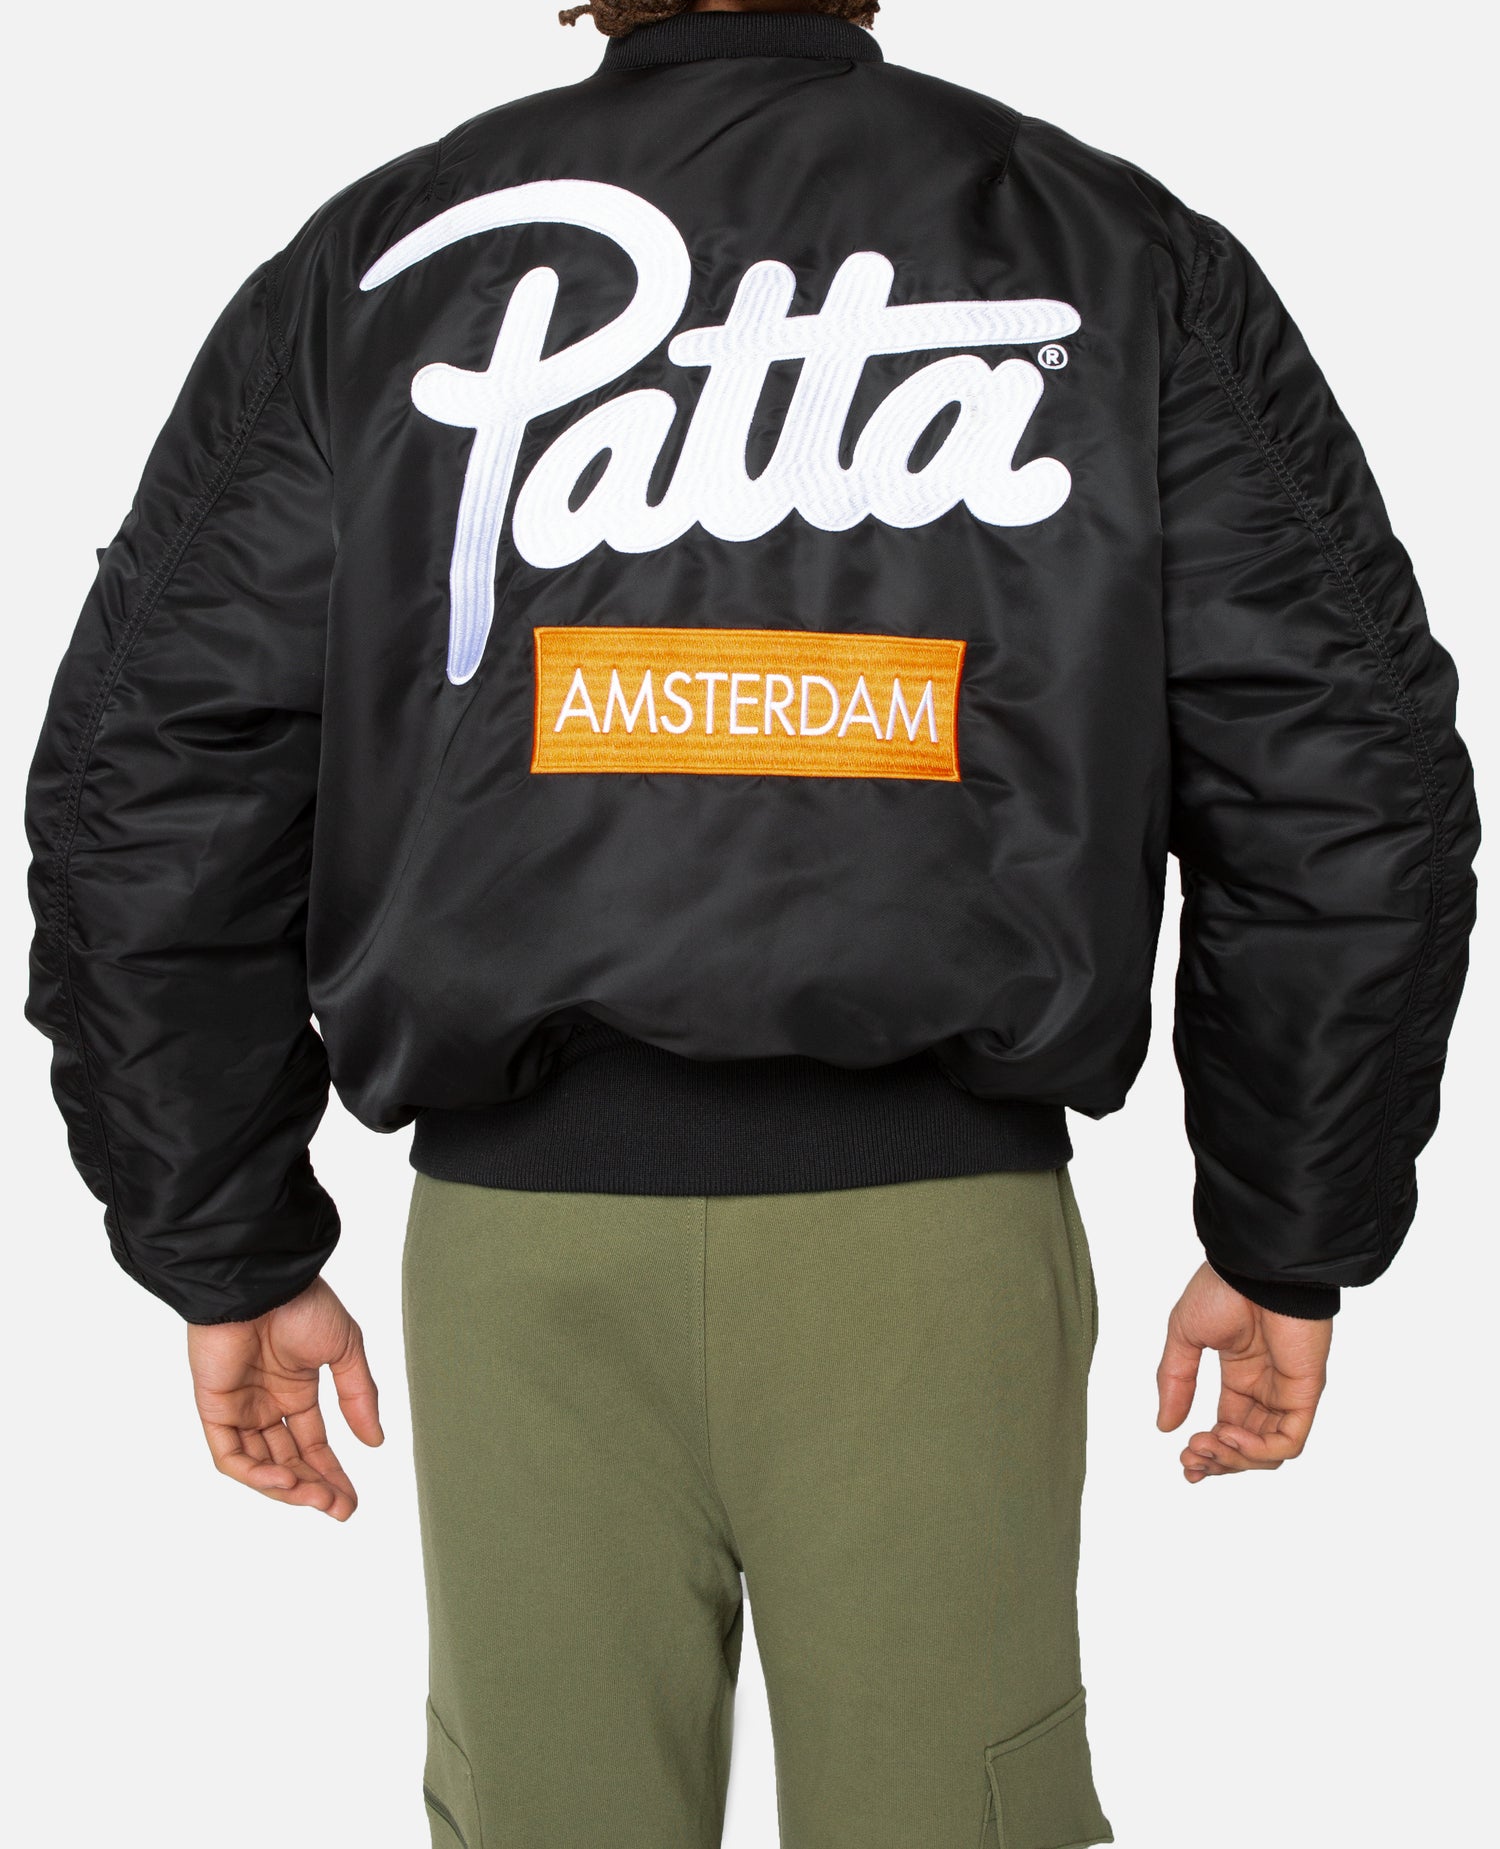 Esclusiva del negozio: Giacca Patta x Alpha Industries MA-1 Amsterdam (nera/arancione)